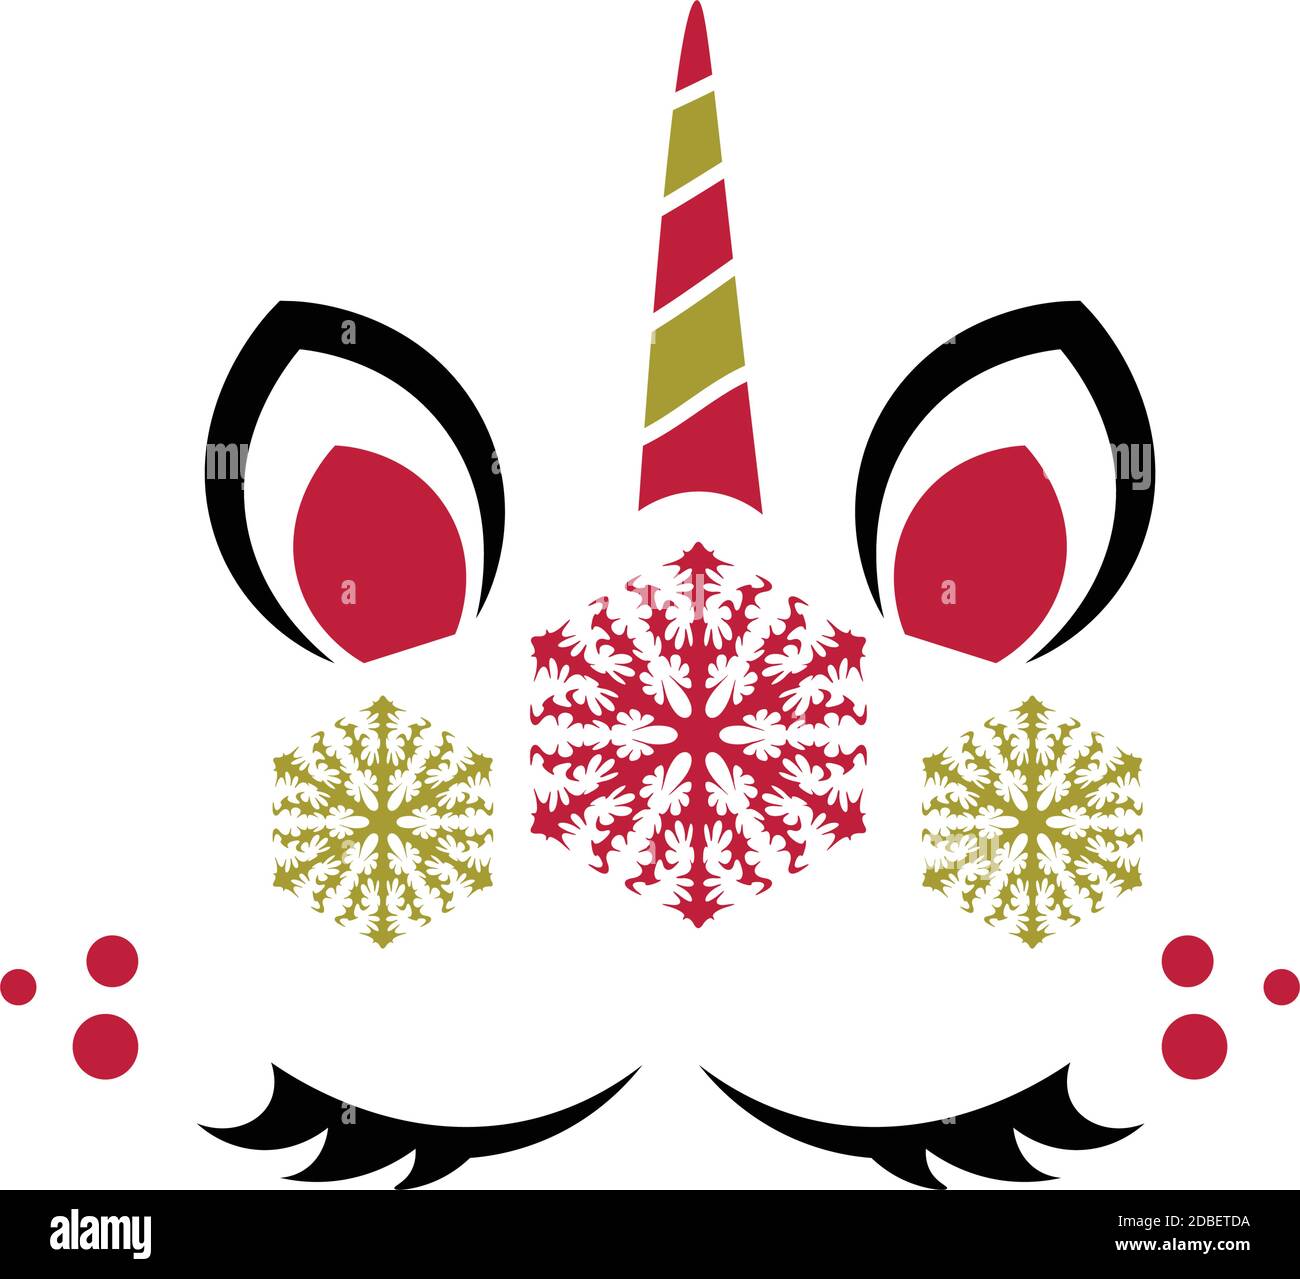 Jolie tête de licorne de Noël avec articles de Noël, cadeau de Noël magique  Image Vectorielle Stock - Alamy